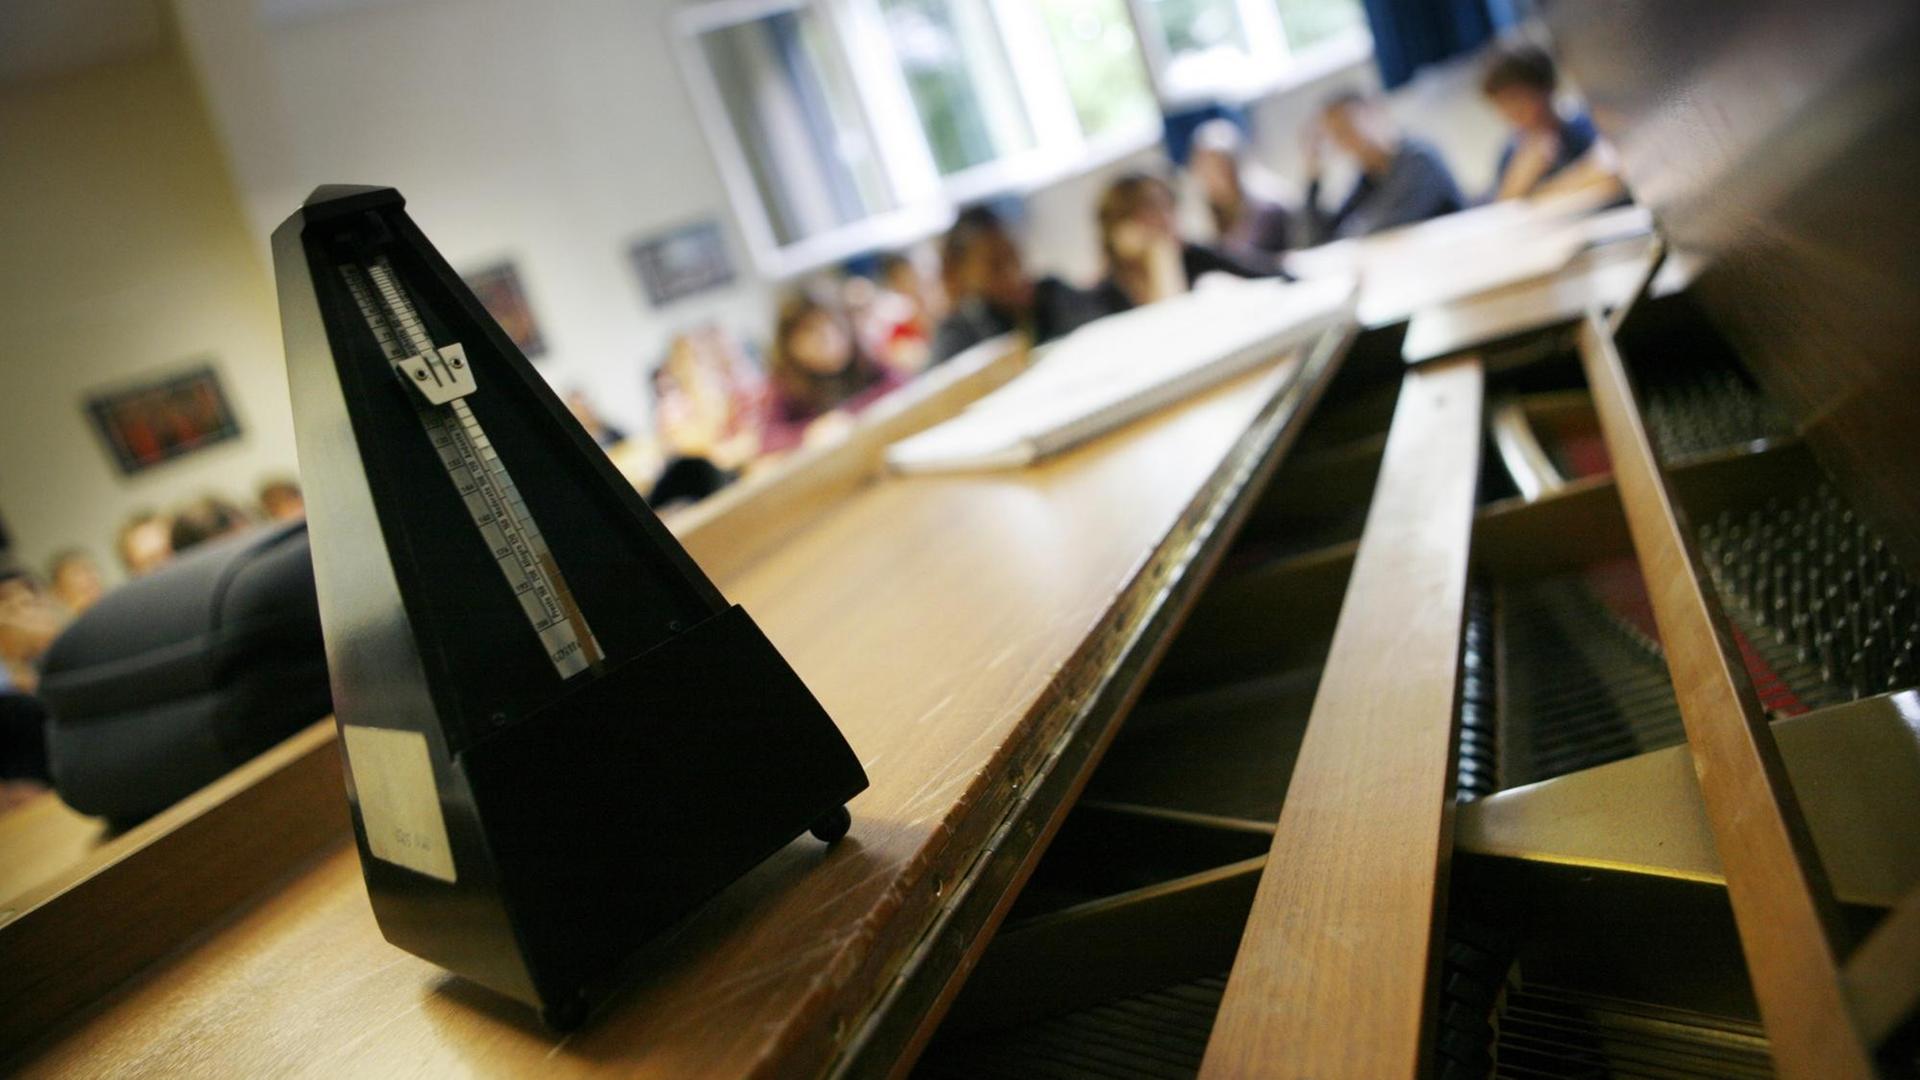 Ein Metronom steht in einem Gymnasium in Frankfurt am Main während des Musikunterrichtes auf dem Flügel.